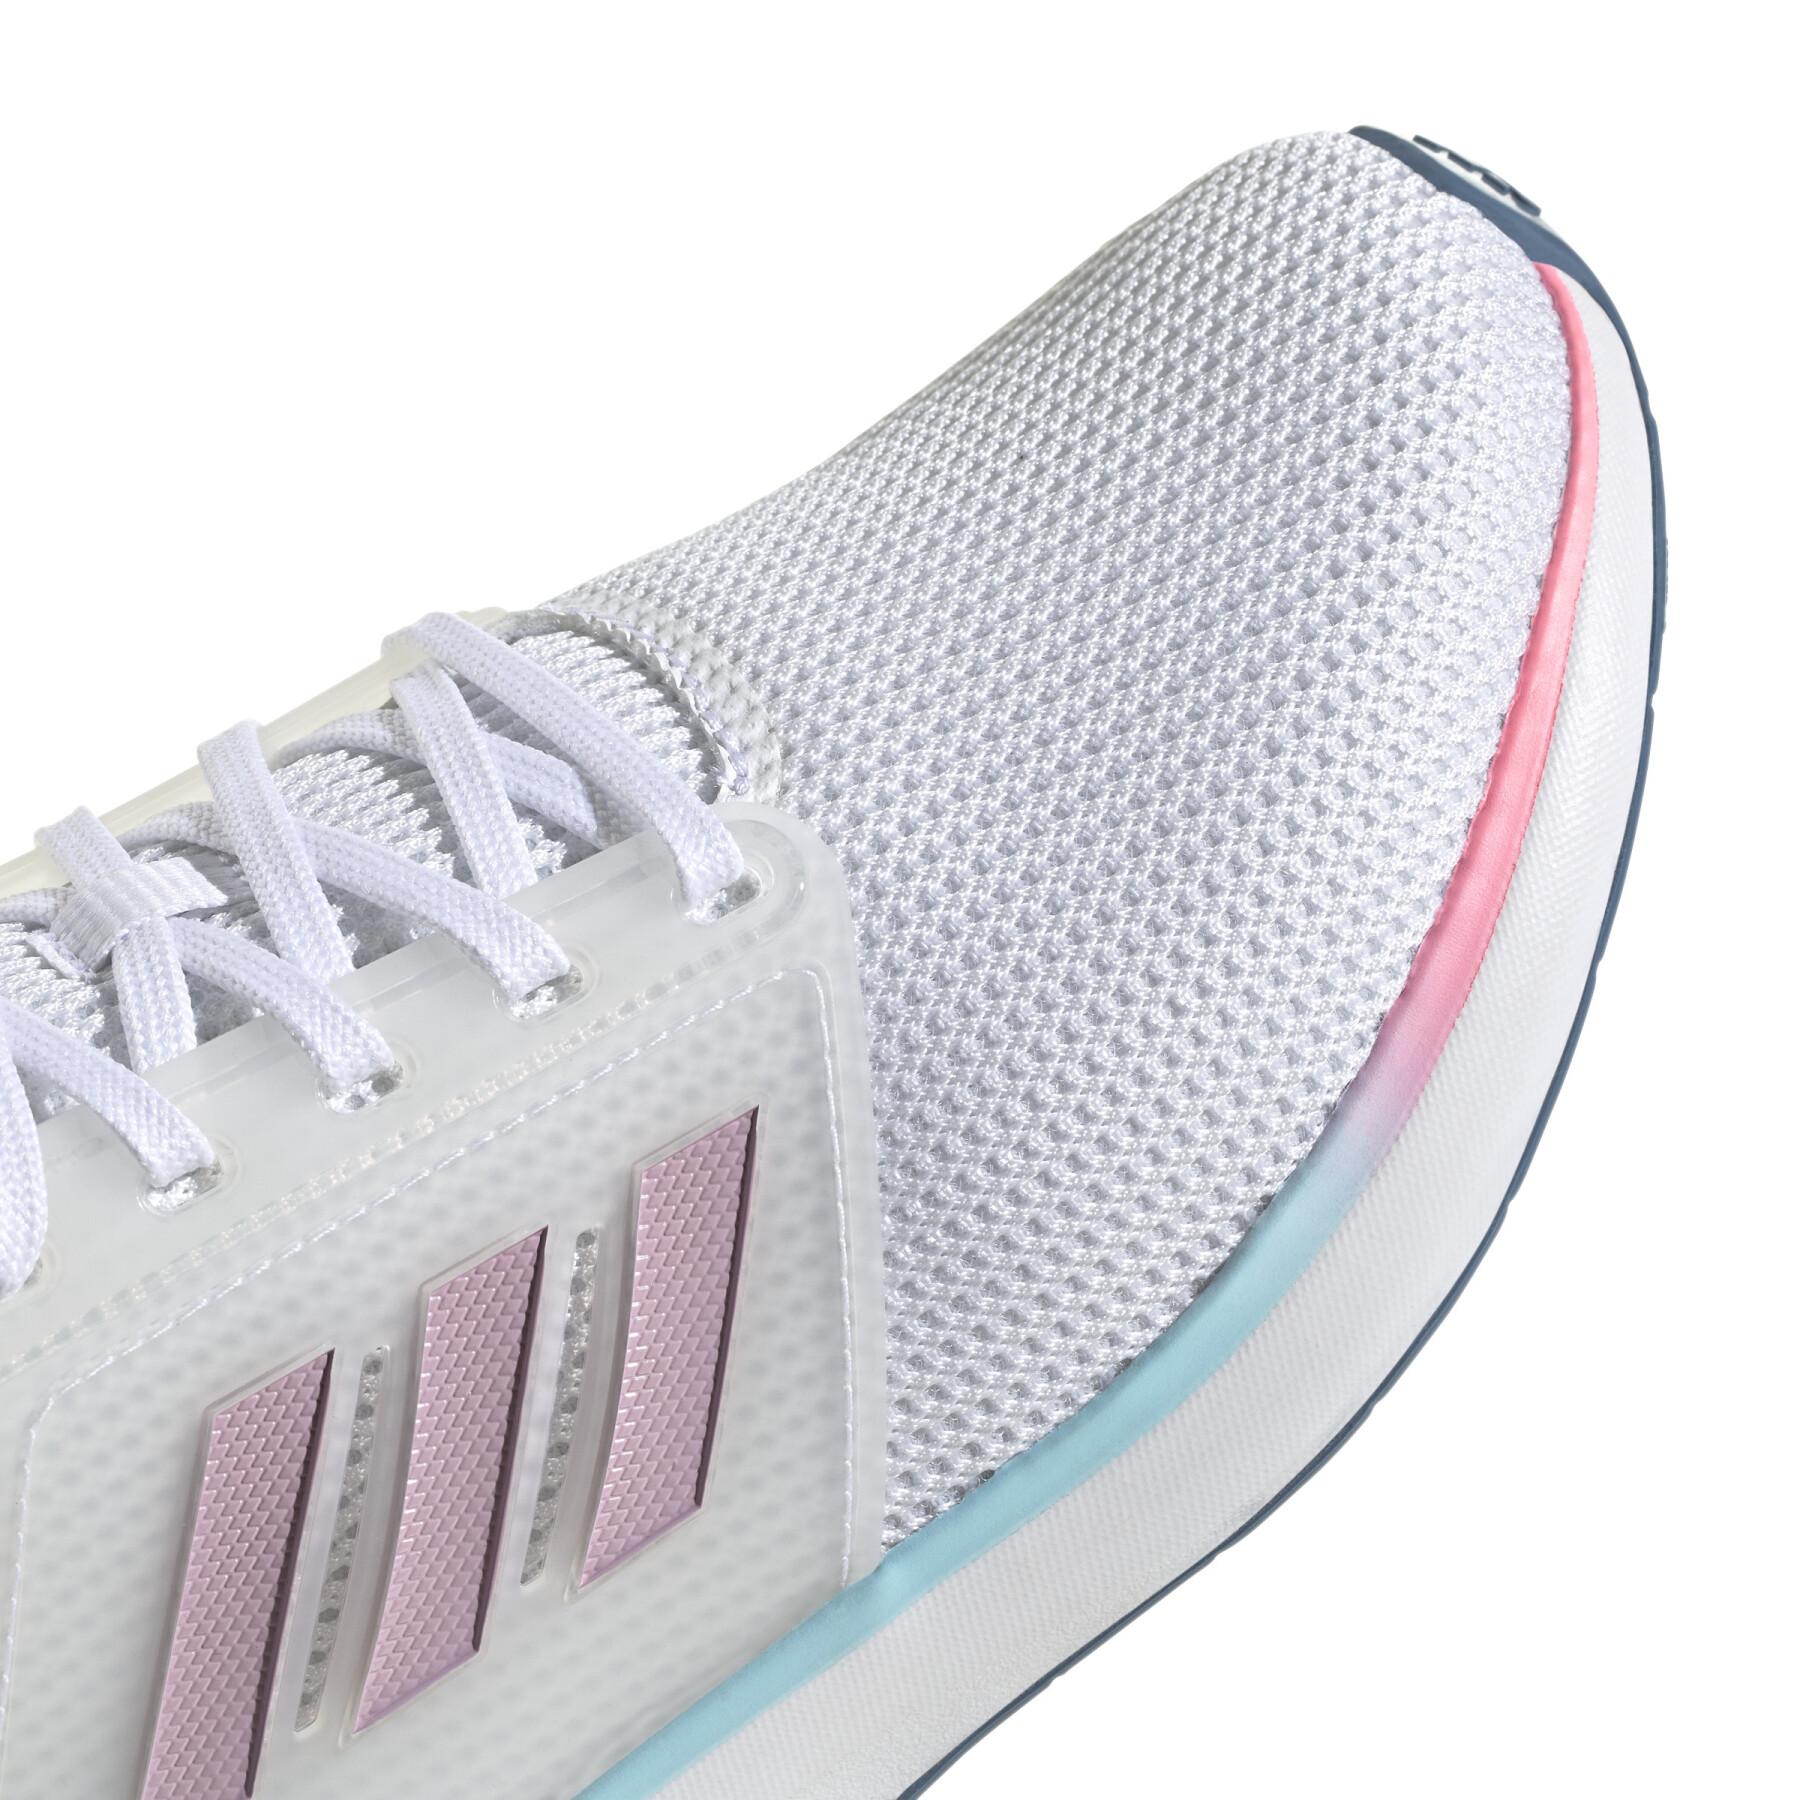 Buty do biegania dla kobiet adidas EQ19 Run